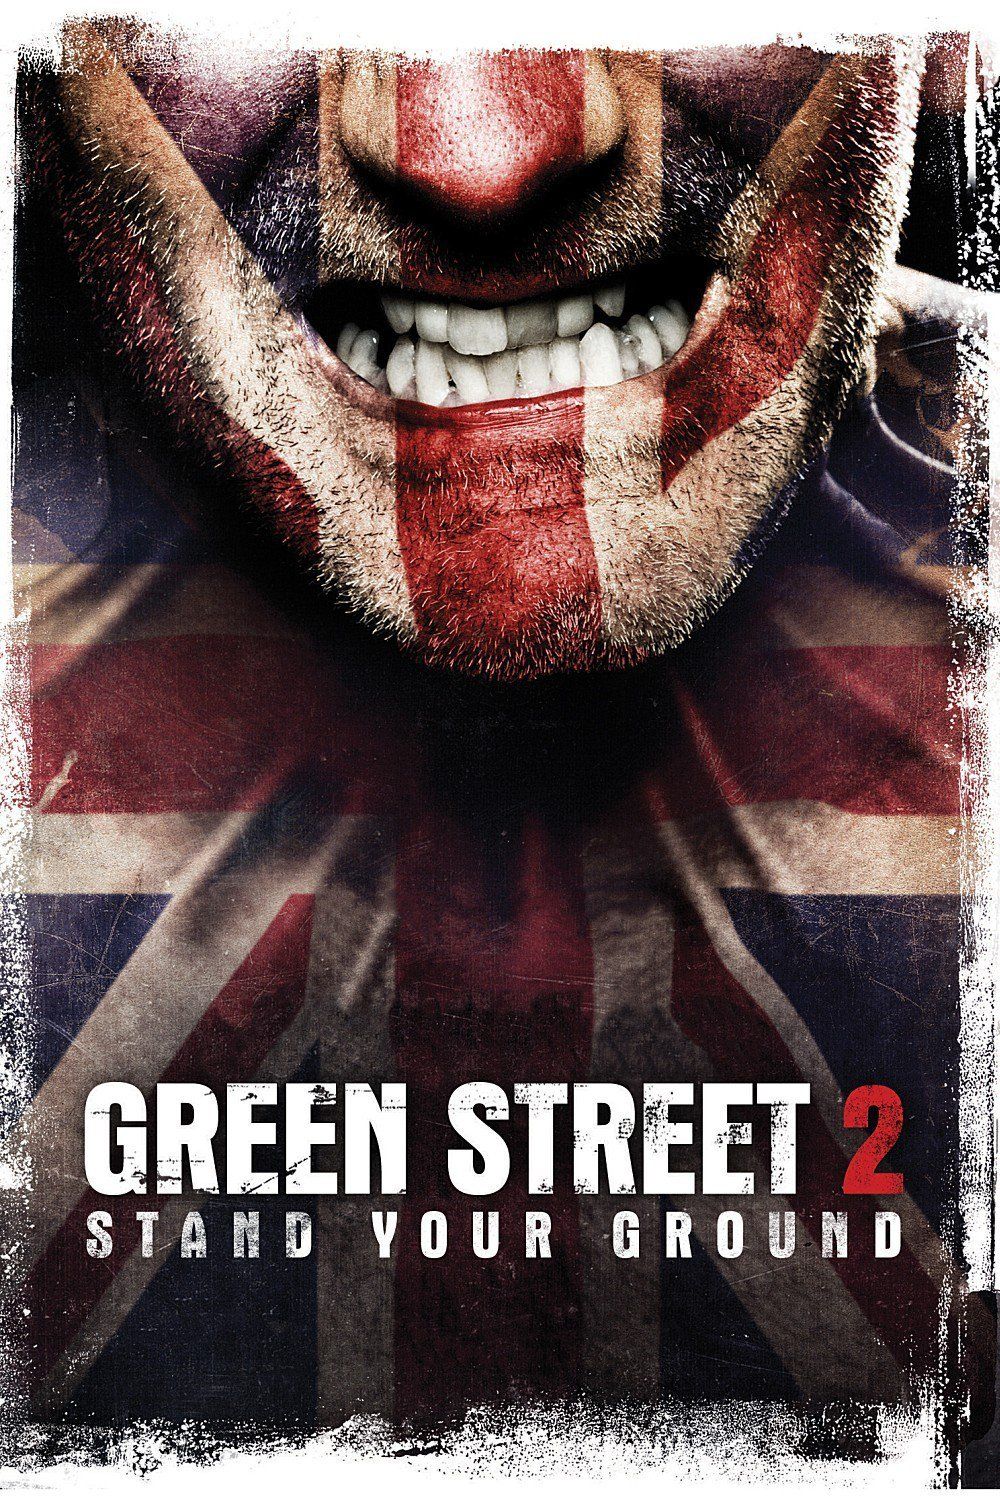 Green Street Hooligans 2 (Video 2009)